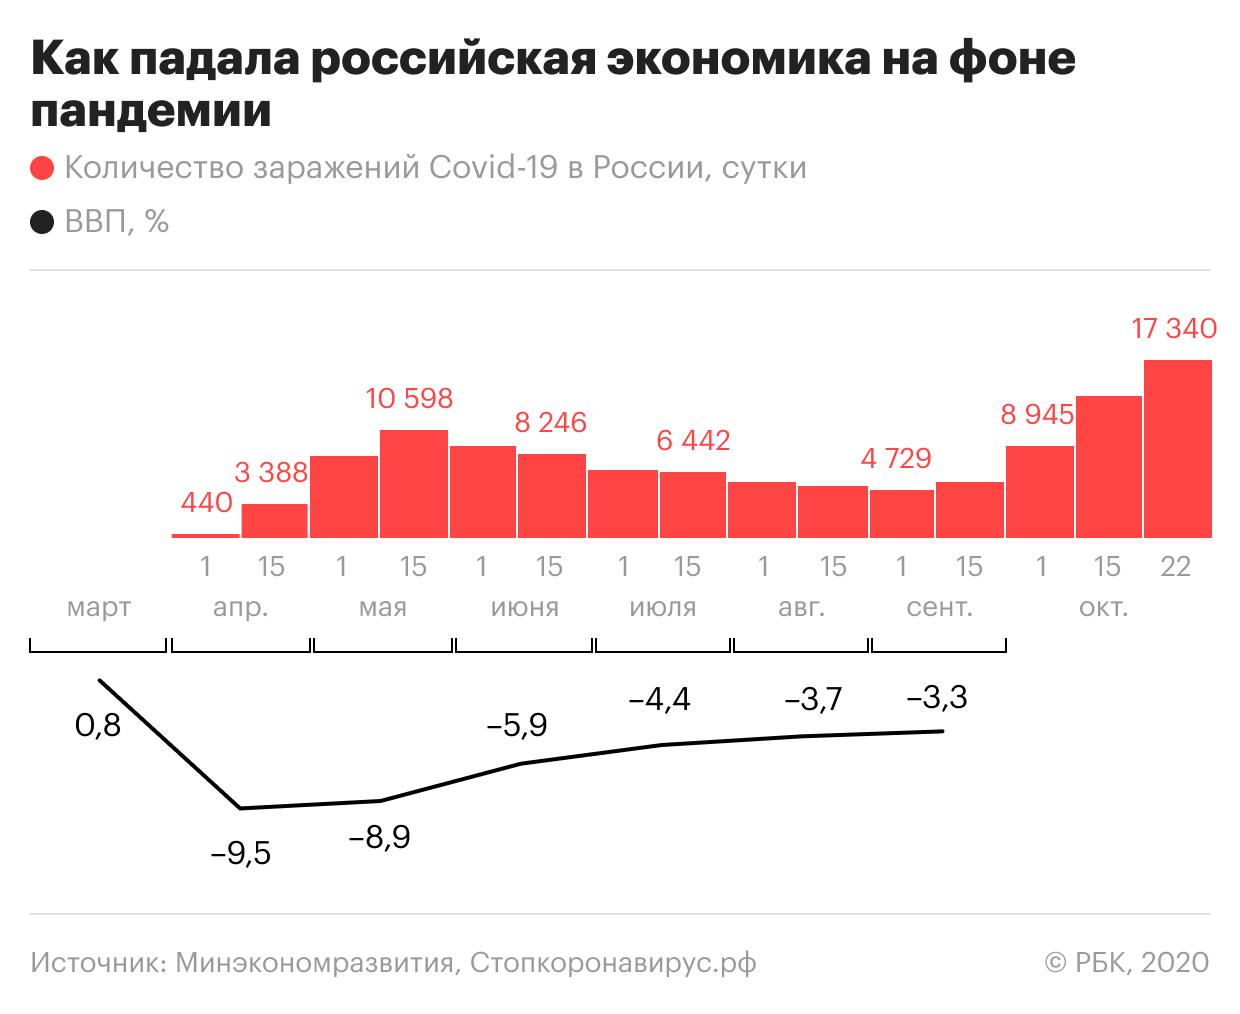 Эффективная экономика россии